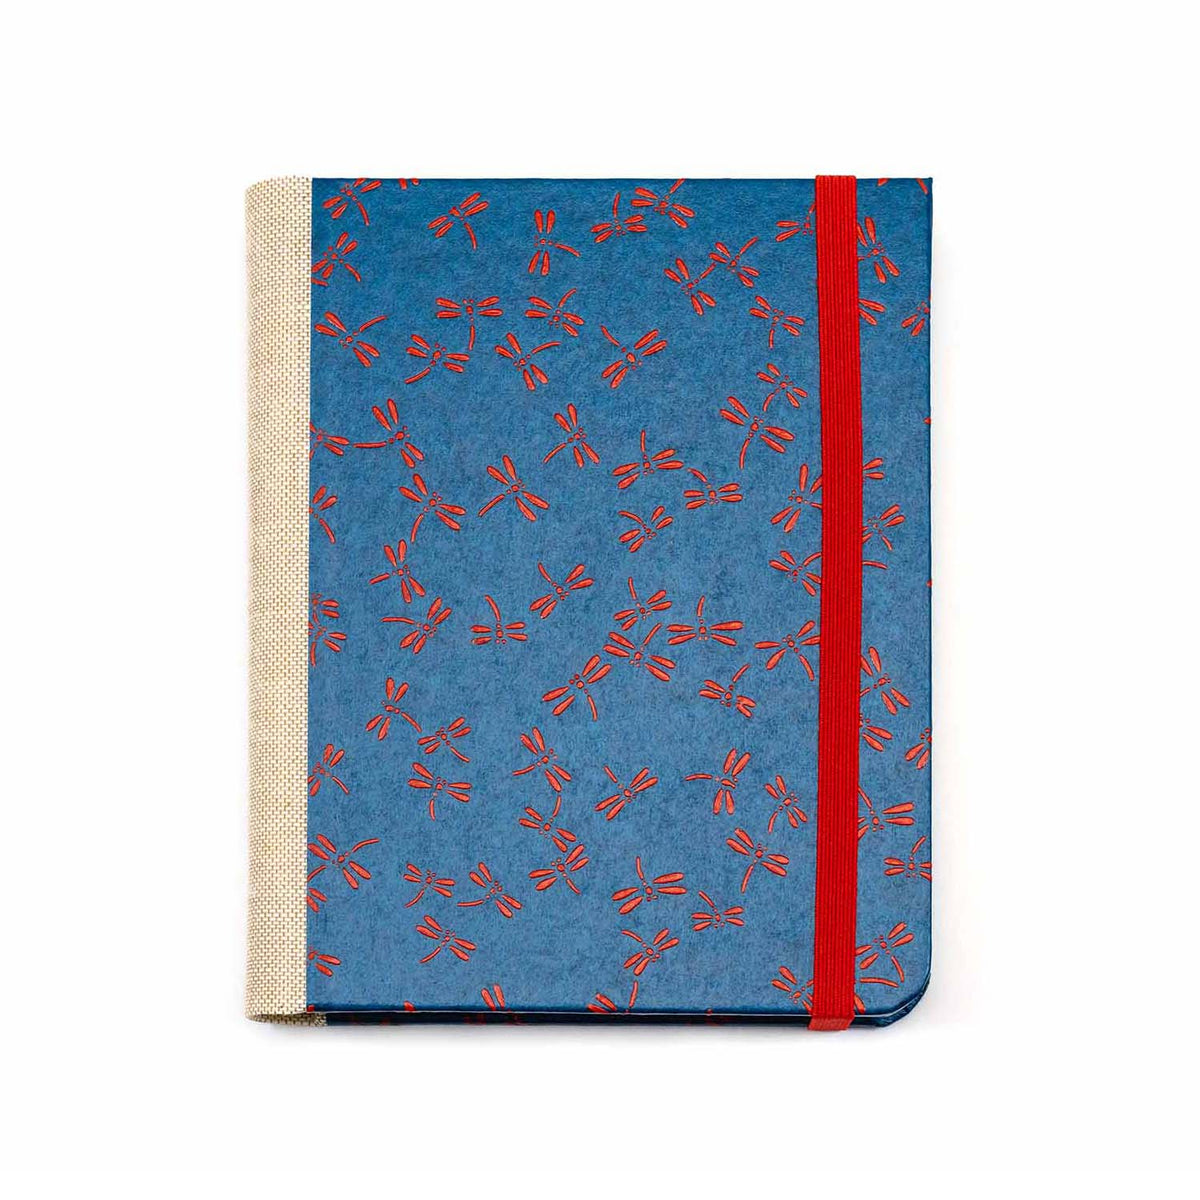 3Jahresplaner, vergleichendes Tagebuch, red Dragonfly on blue, Lackpapier Hersteller Blaupause, Aussenansicht, Einband